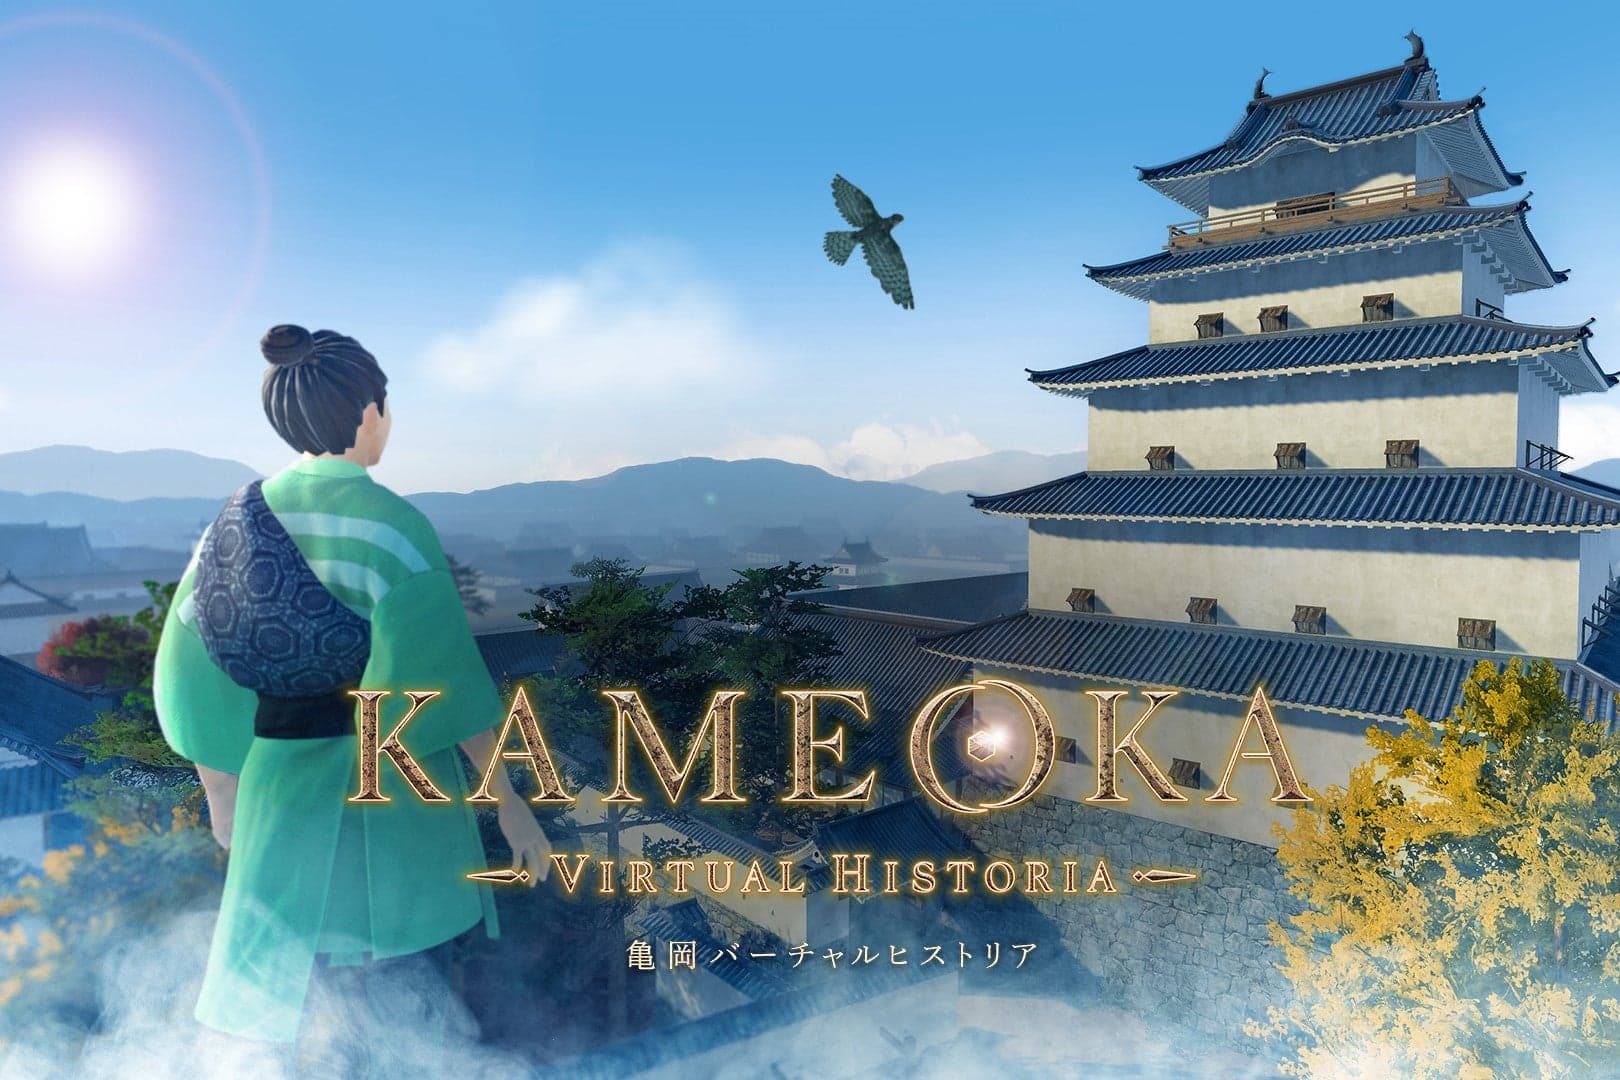 KAMEOKA VIRTUAL HISTORIA｜亀岡市デジタル文化資料館   メタバース空間における展示計画、展示空間デザインを担当いたしました